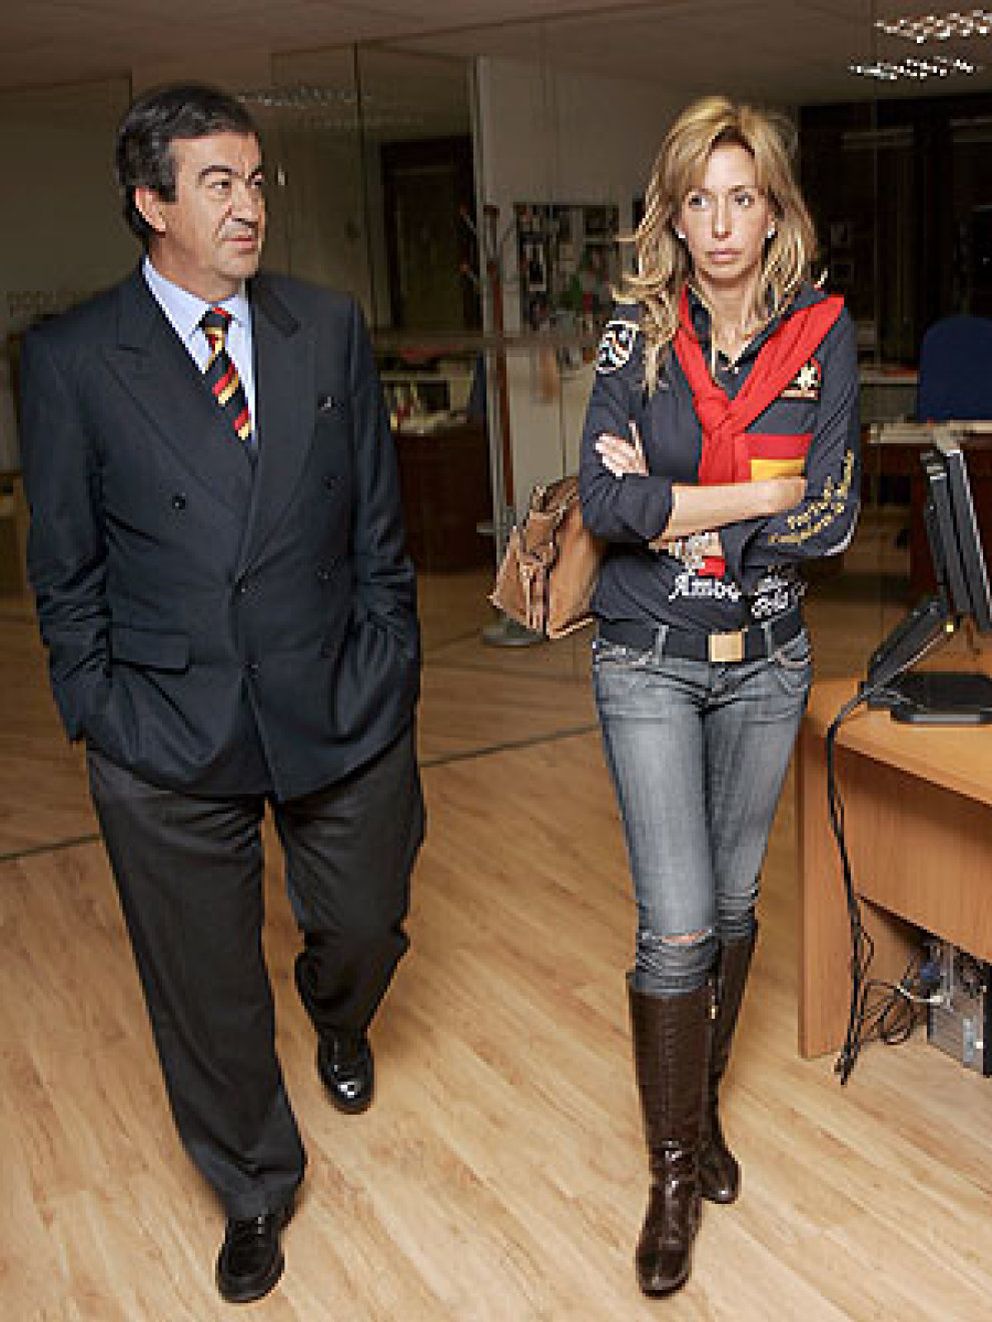 Foto: Cascos y María Porto deciden no seguir con su litigio contra Telecinco para mantener la "relación amistosa"